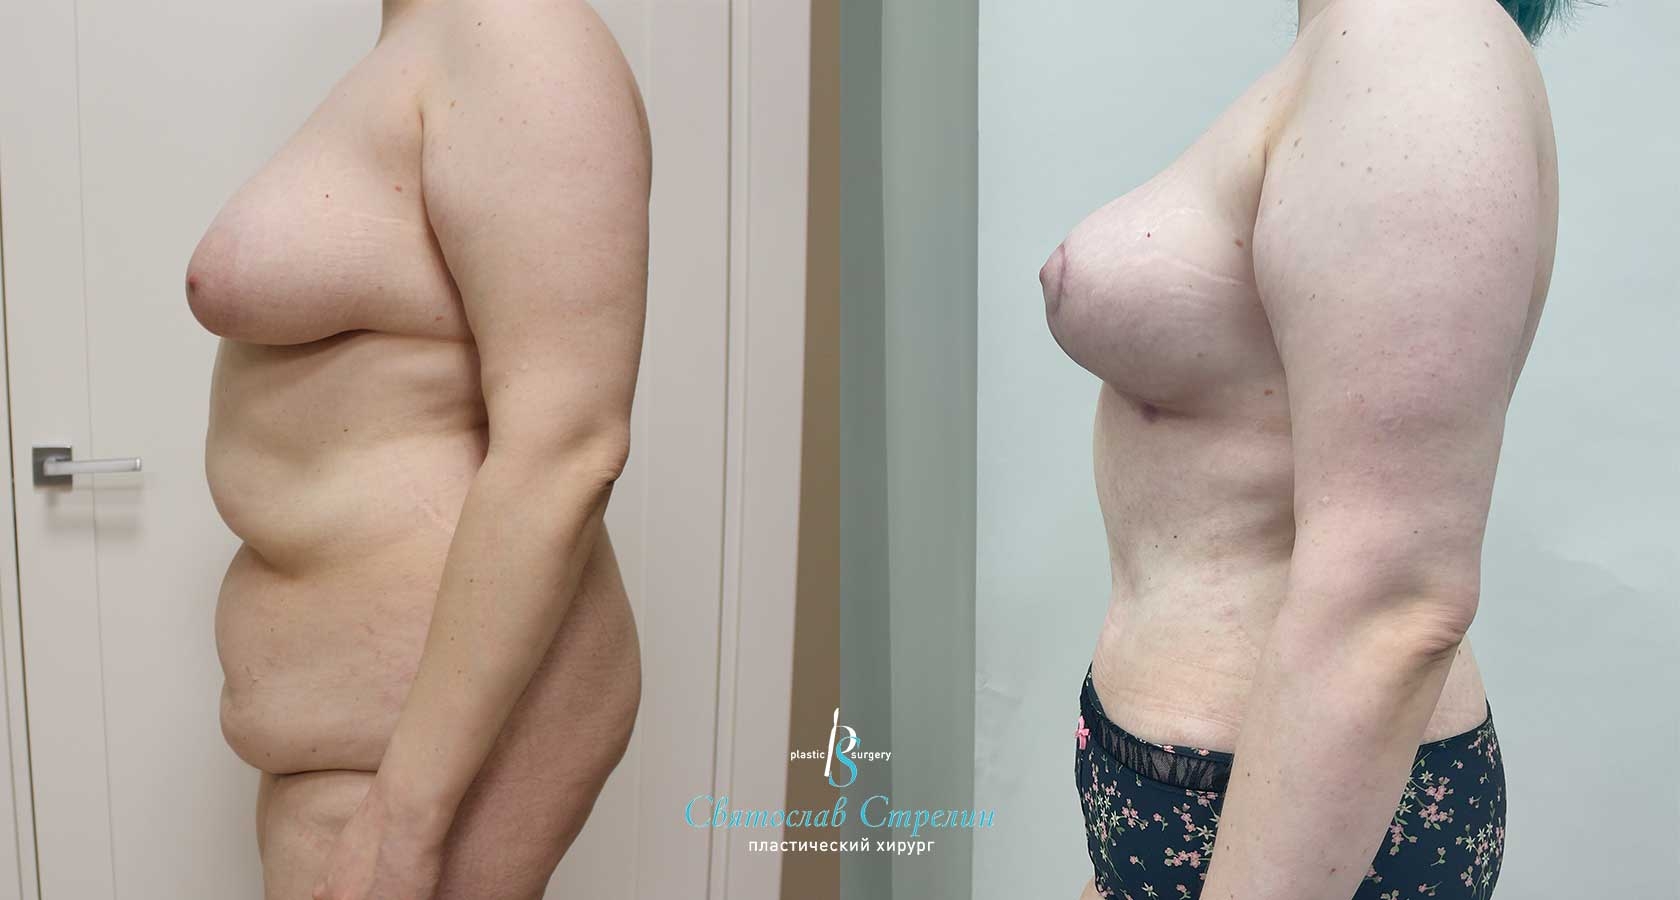 Абдоминопластика, Vaser-липосакция, подтяжка груди, 2 месяца после операции